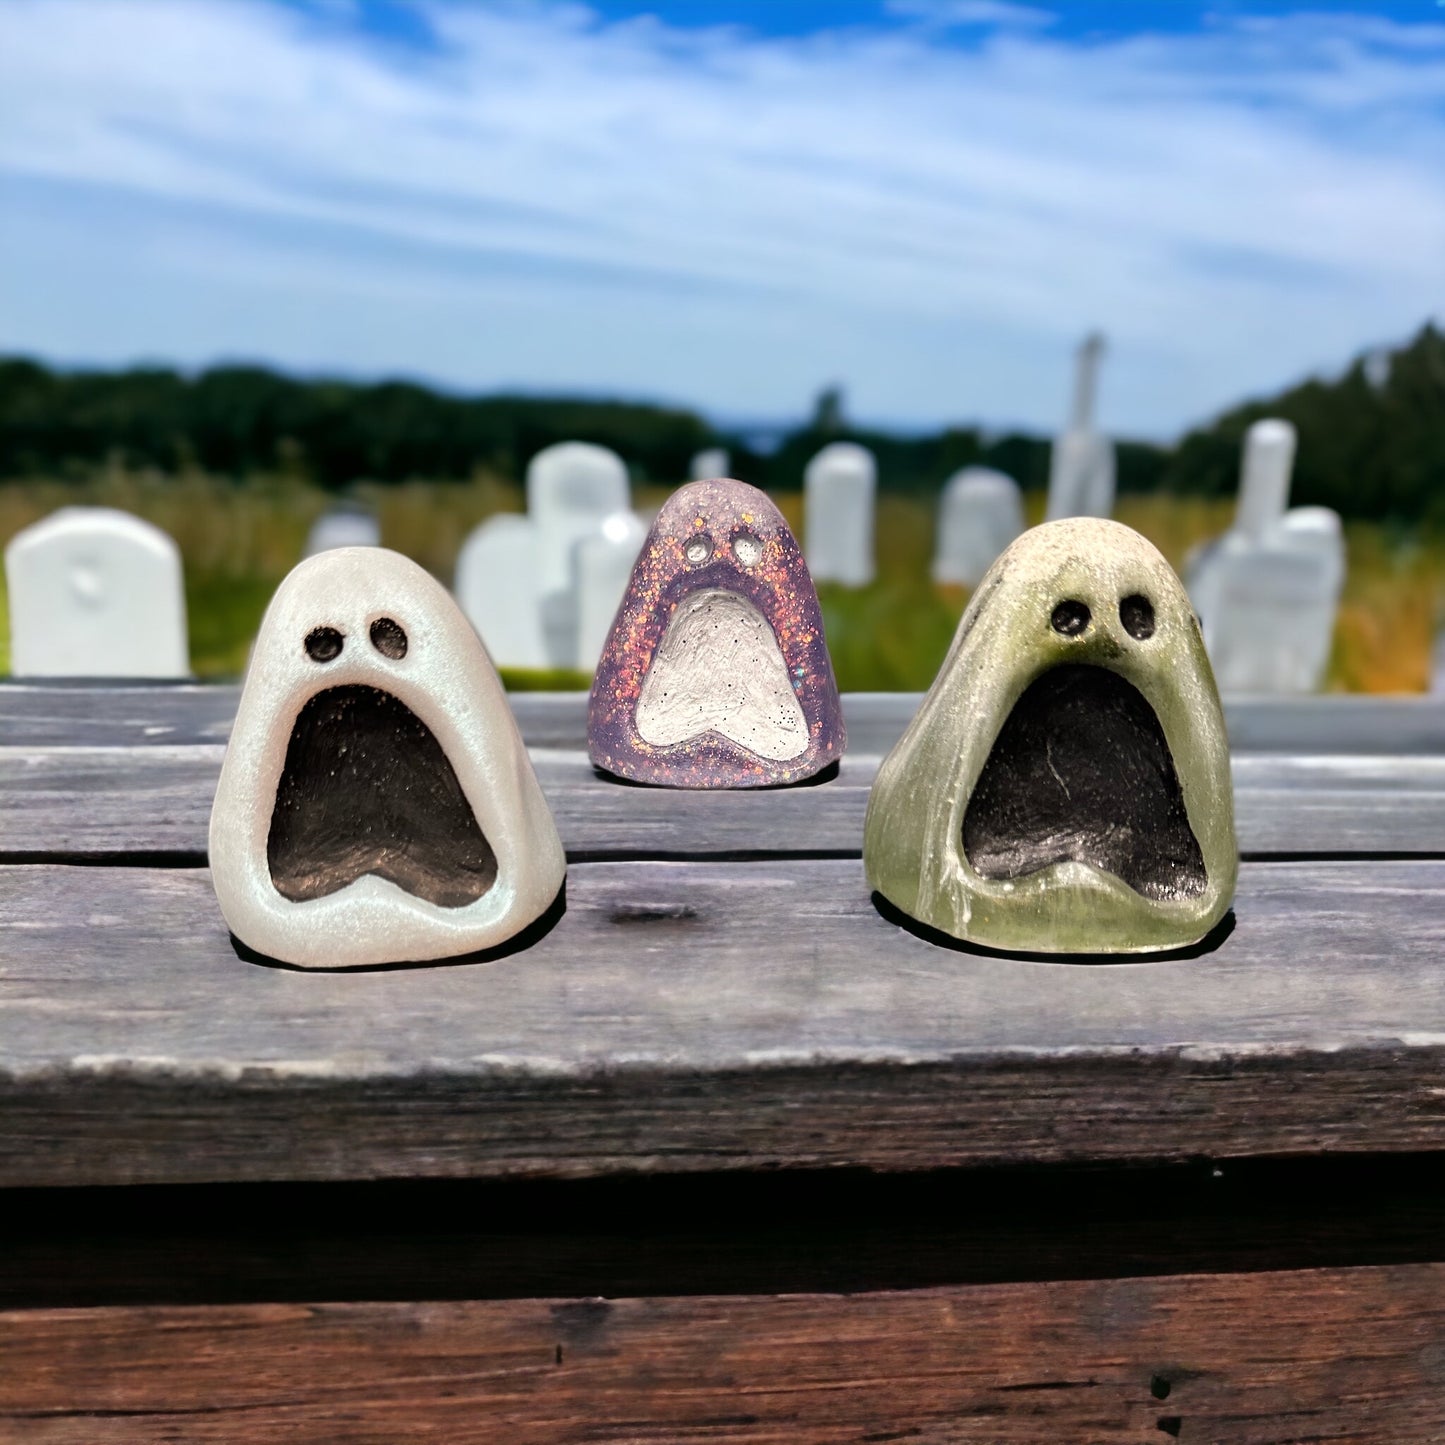 Moaning Ghost Figurine - 3 Varieties